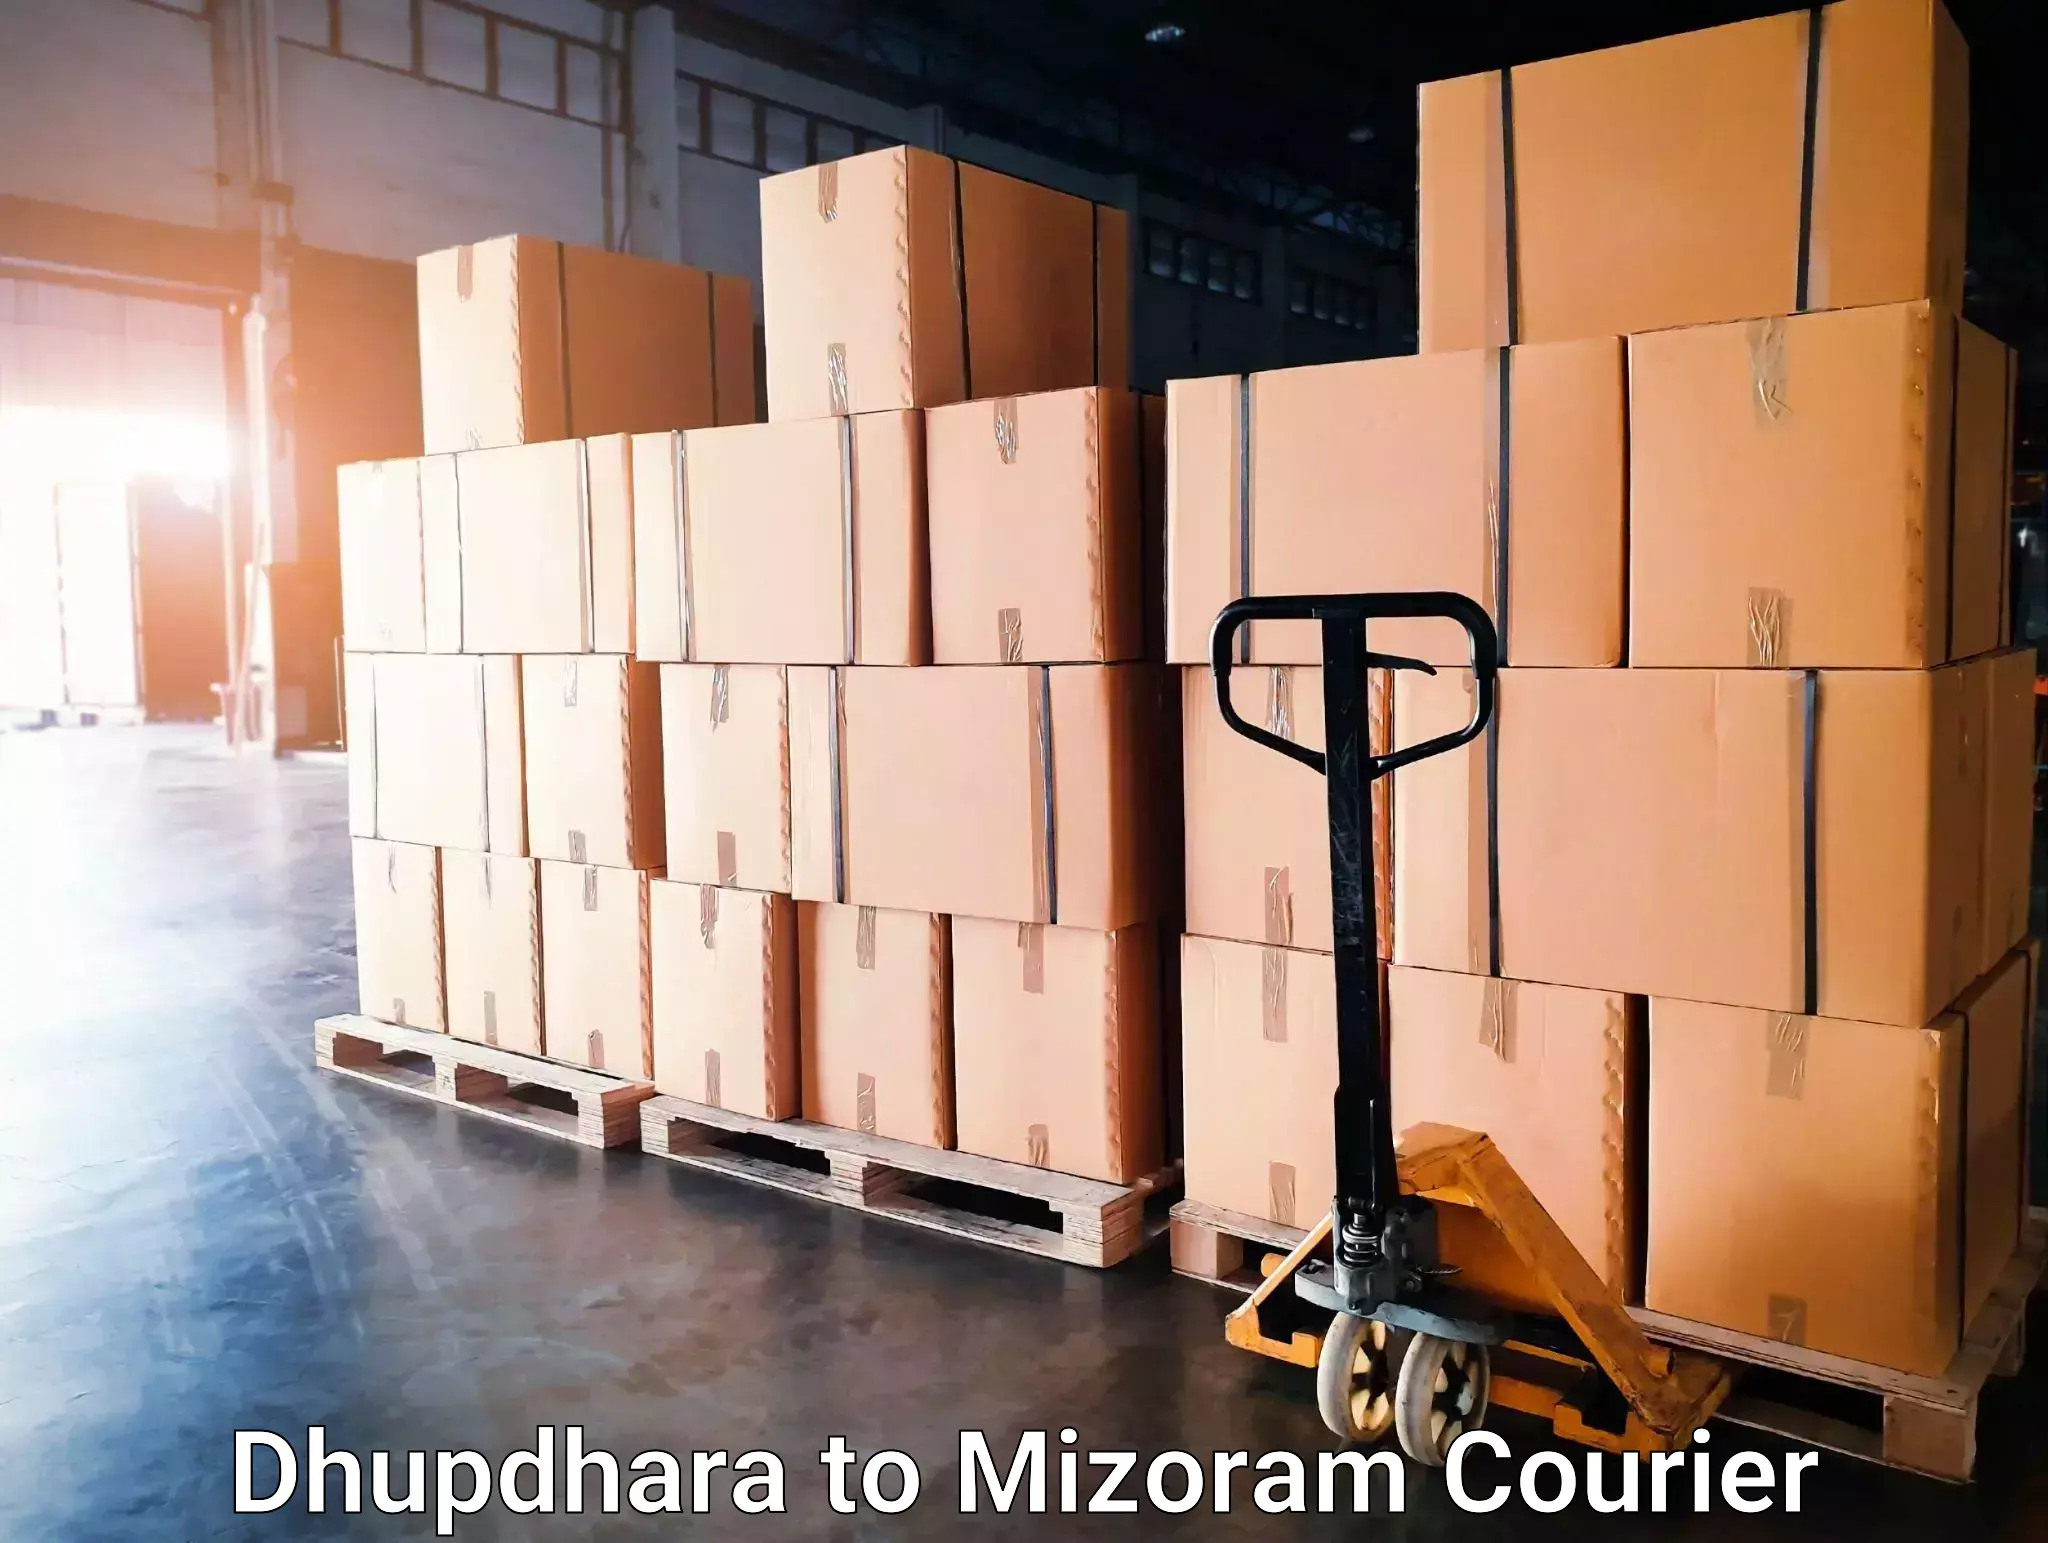 User-friendly courier app Dhupdhara to Serchhip